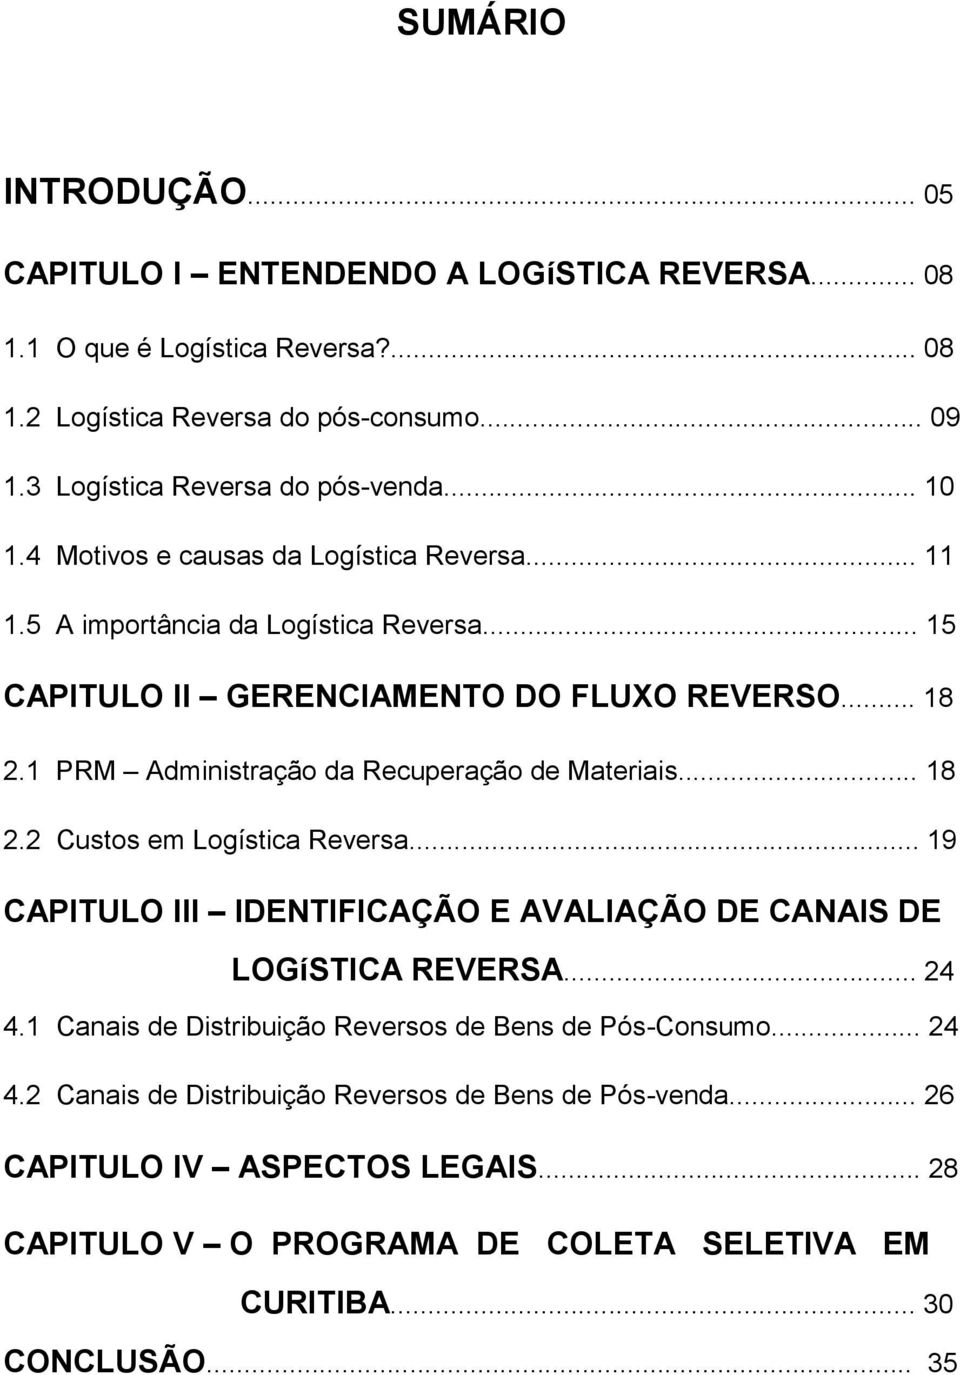 1 PRM Administração da Recuperação de Materiais... 18 2.2 Custos em Logística Reversa... 19 CAPITULO III IDENTIFICAÇÃO E AVALIAÇÃO DE CANAIS DE LOGíSTICA REVERSA... 24 4.